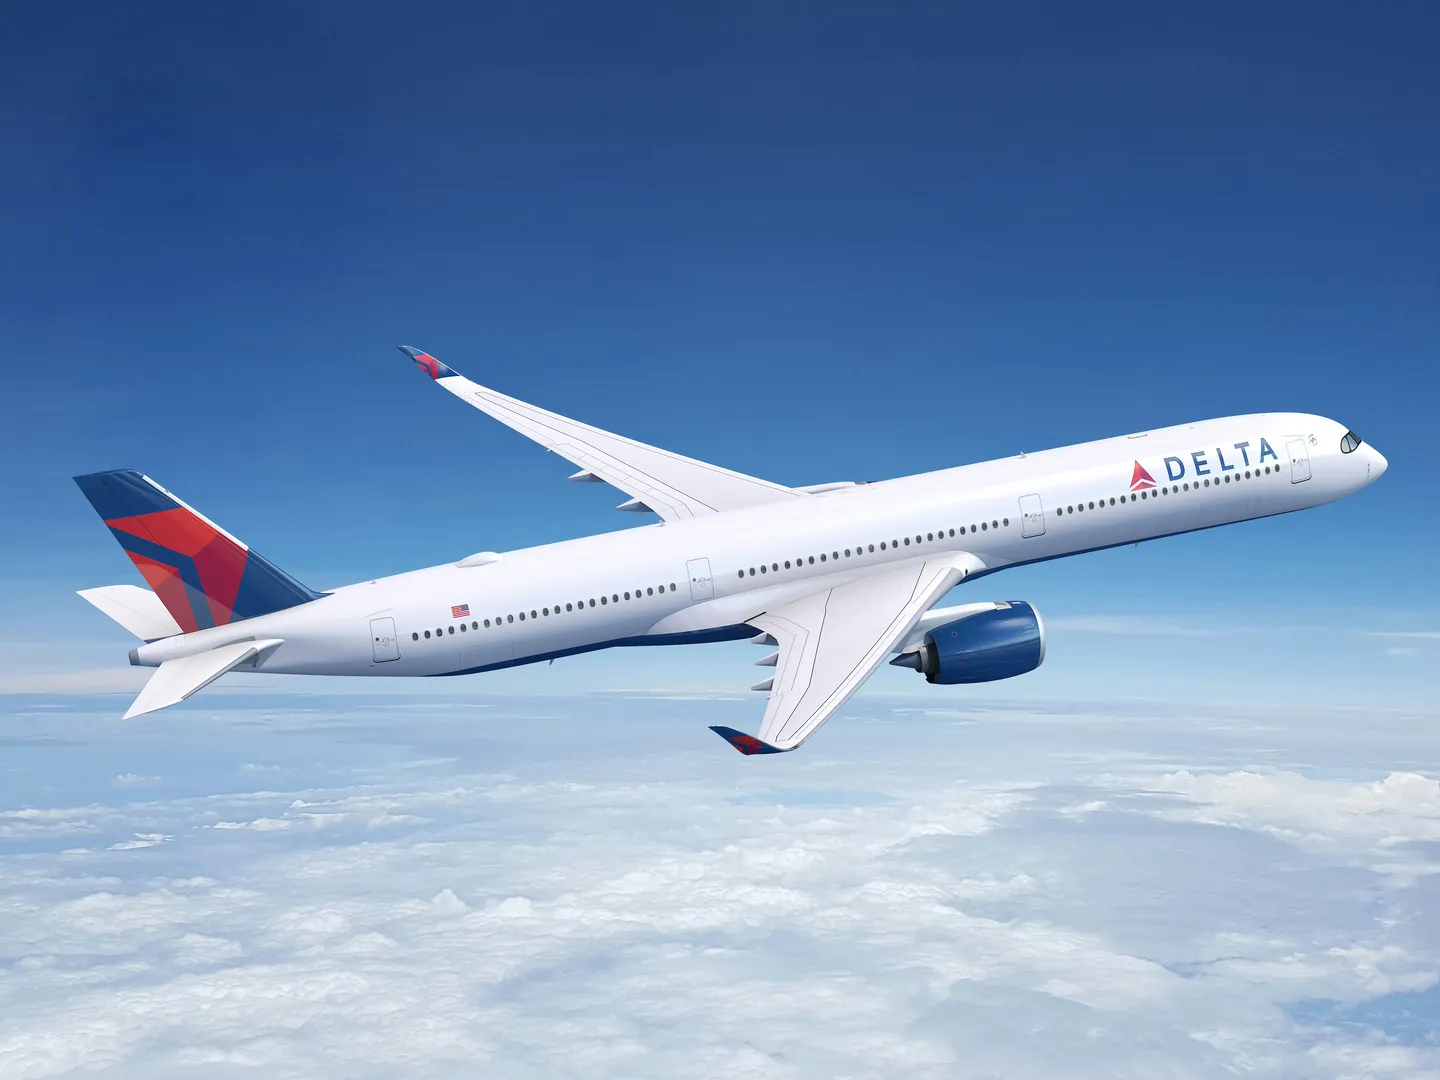 Delta confirma a aquisição do A350-1000